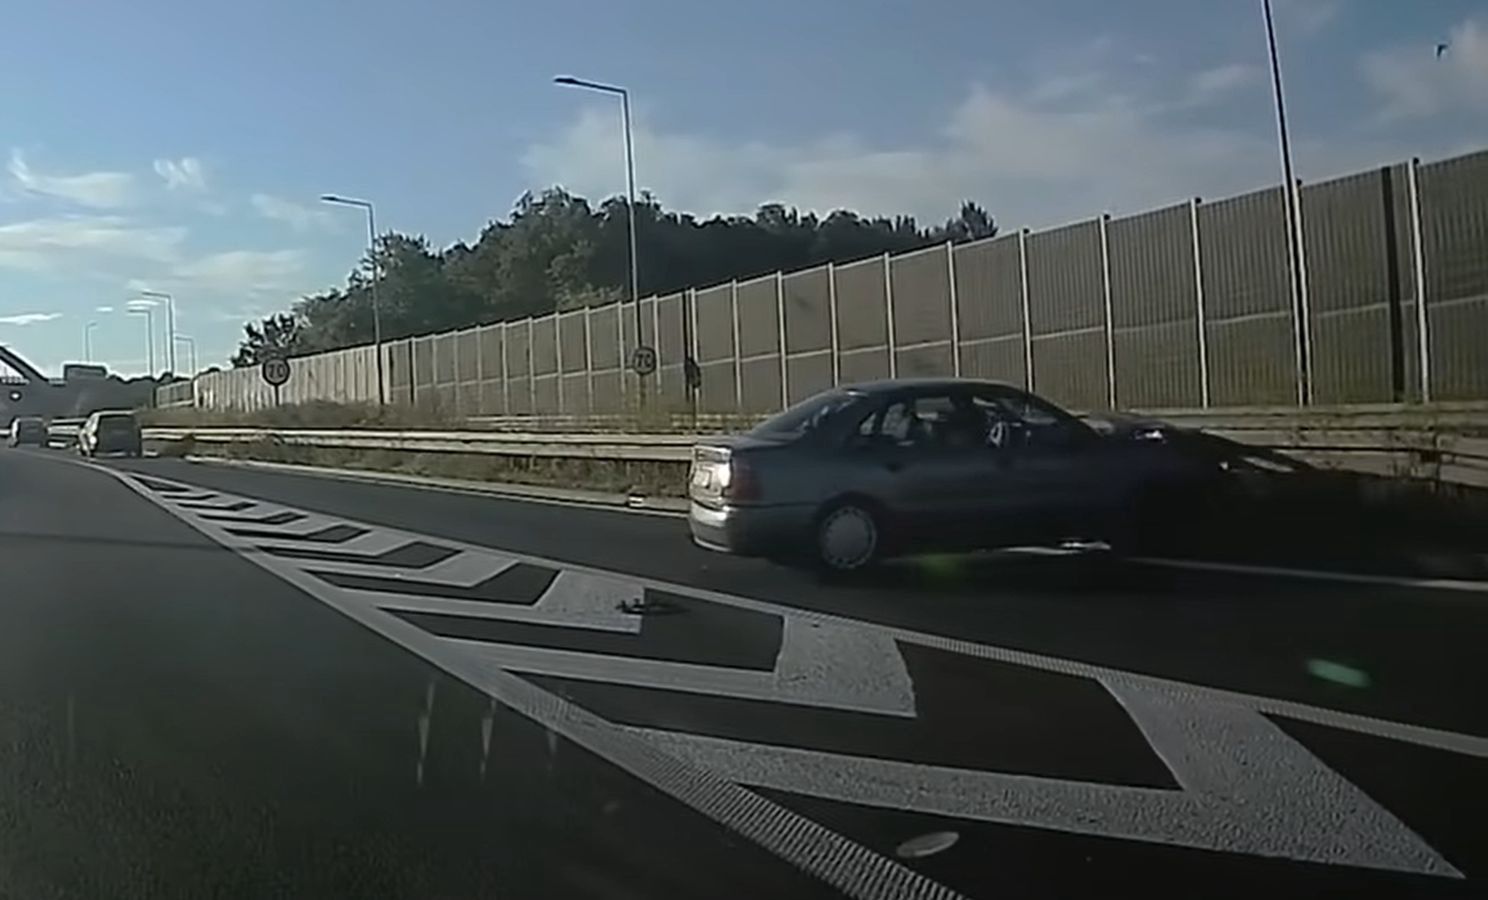 Audi odbijało się od barierek. Dramatyczne nagranie z autostrady A4